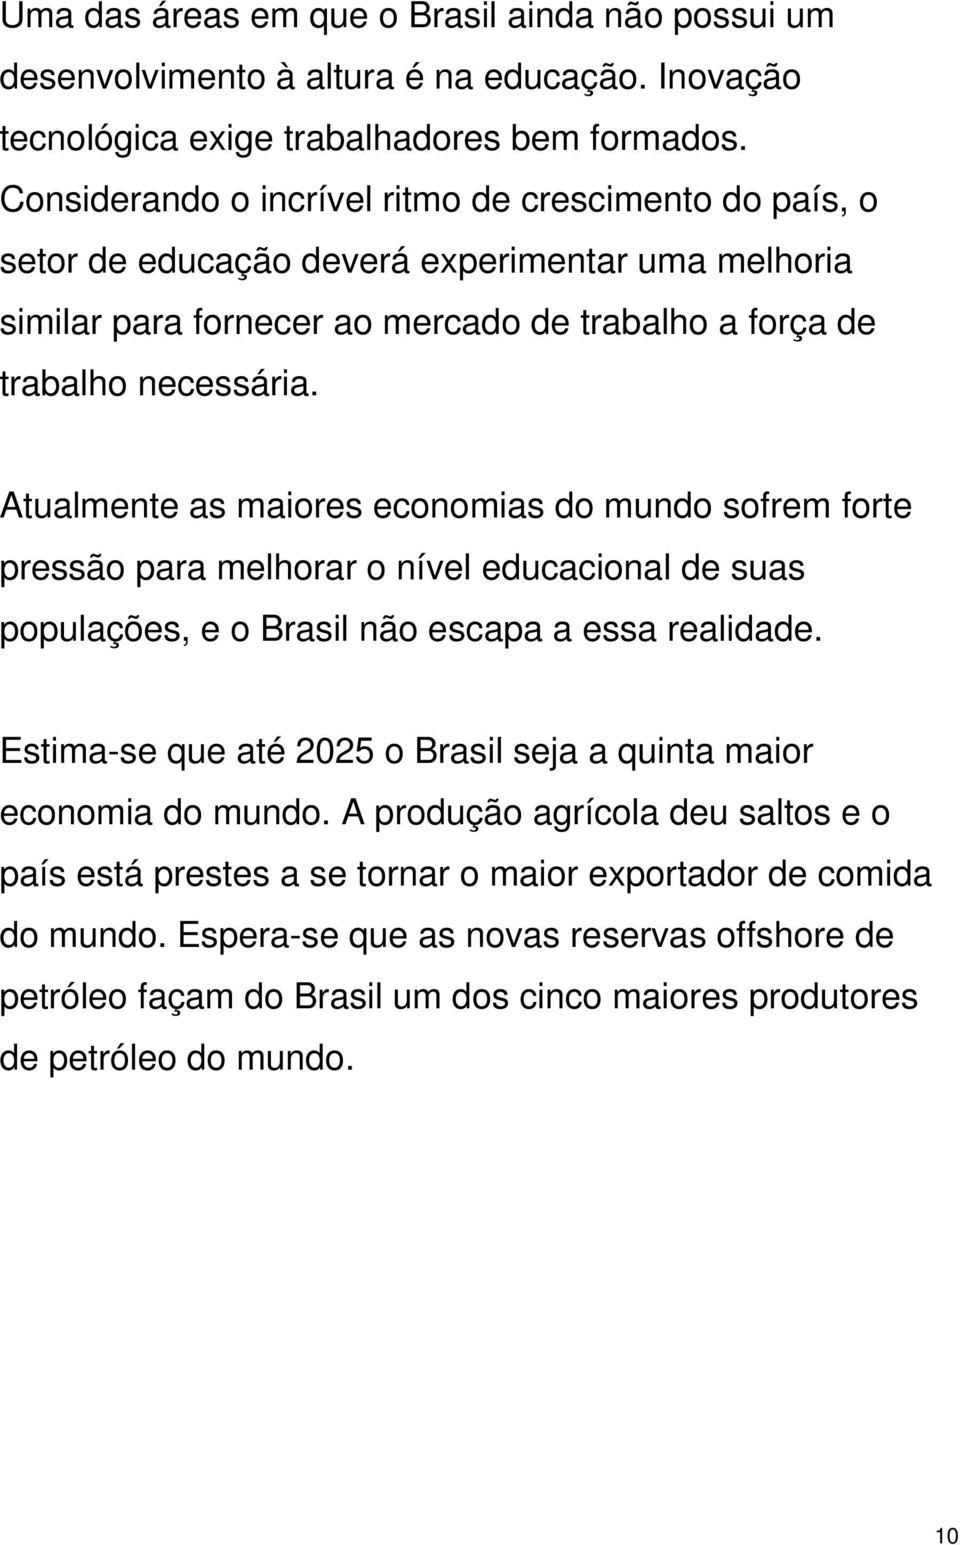 Atualmente as maiores economias do mundo sofrem forte pressão para melhorar o nível educacional de suas populações, e o Brasil não escapa a essa realidade.